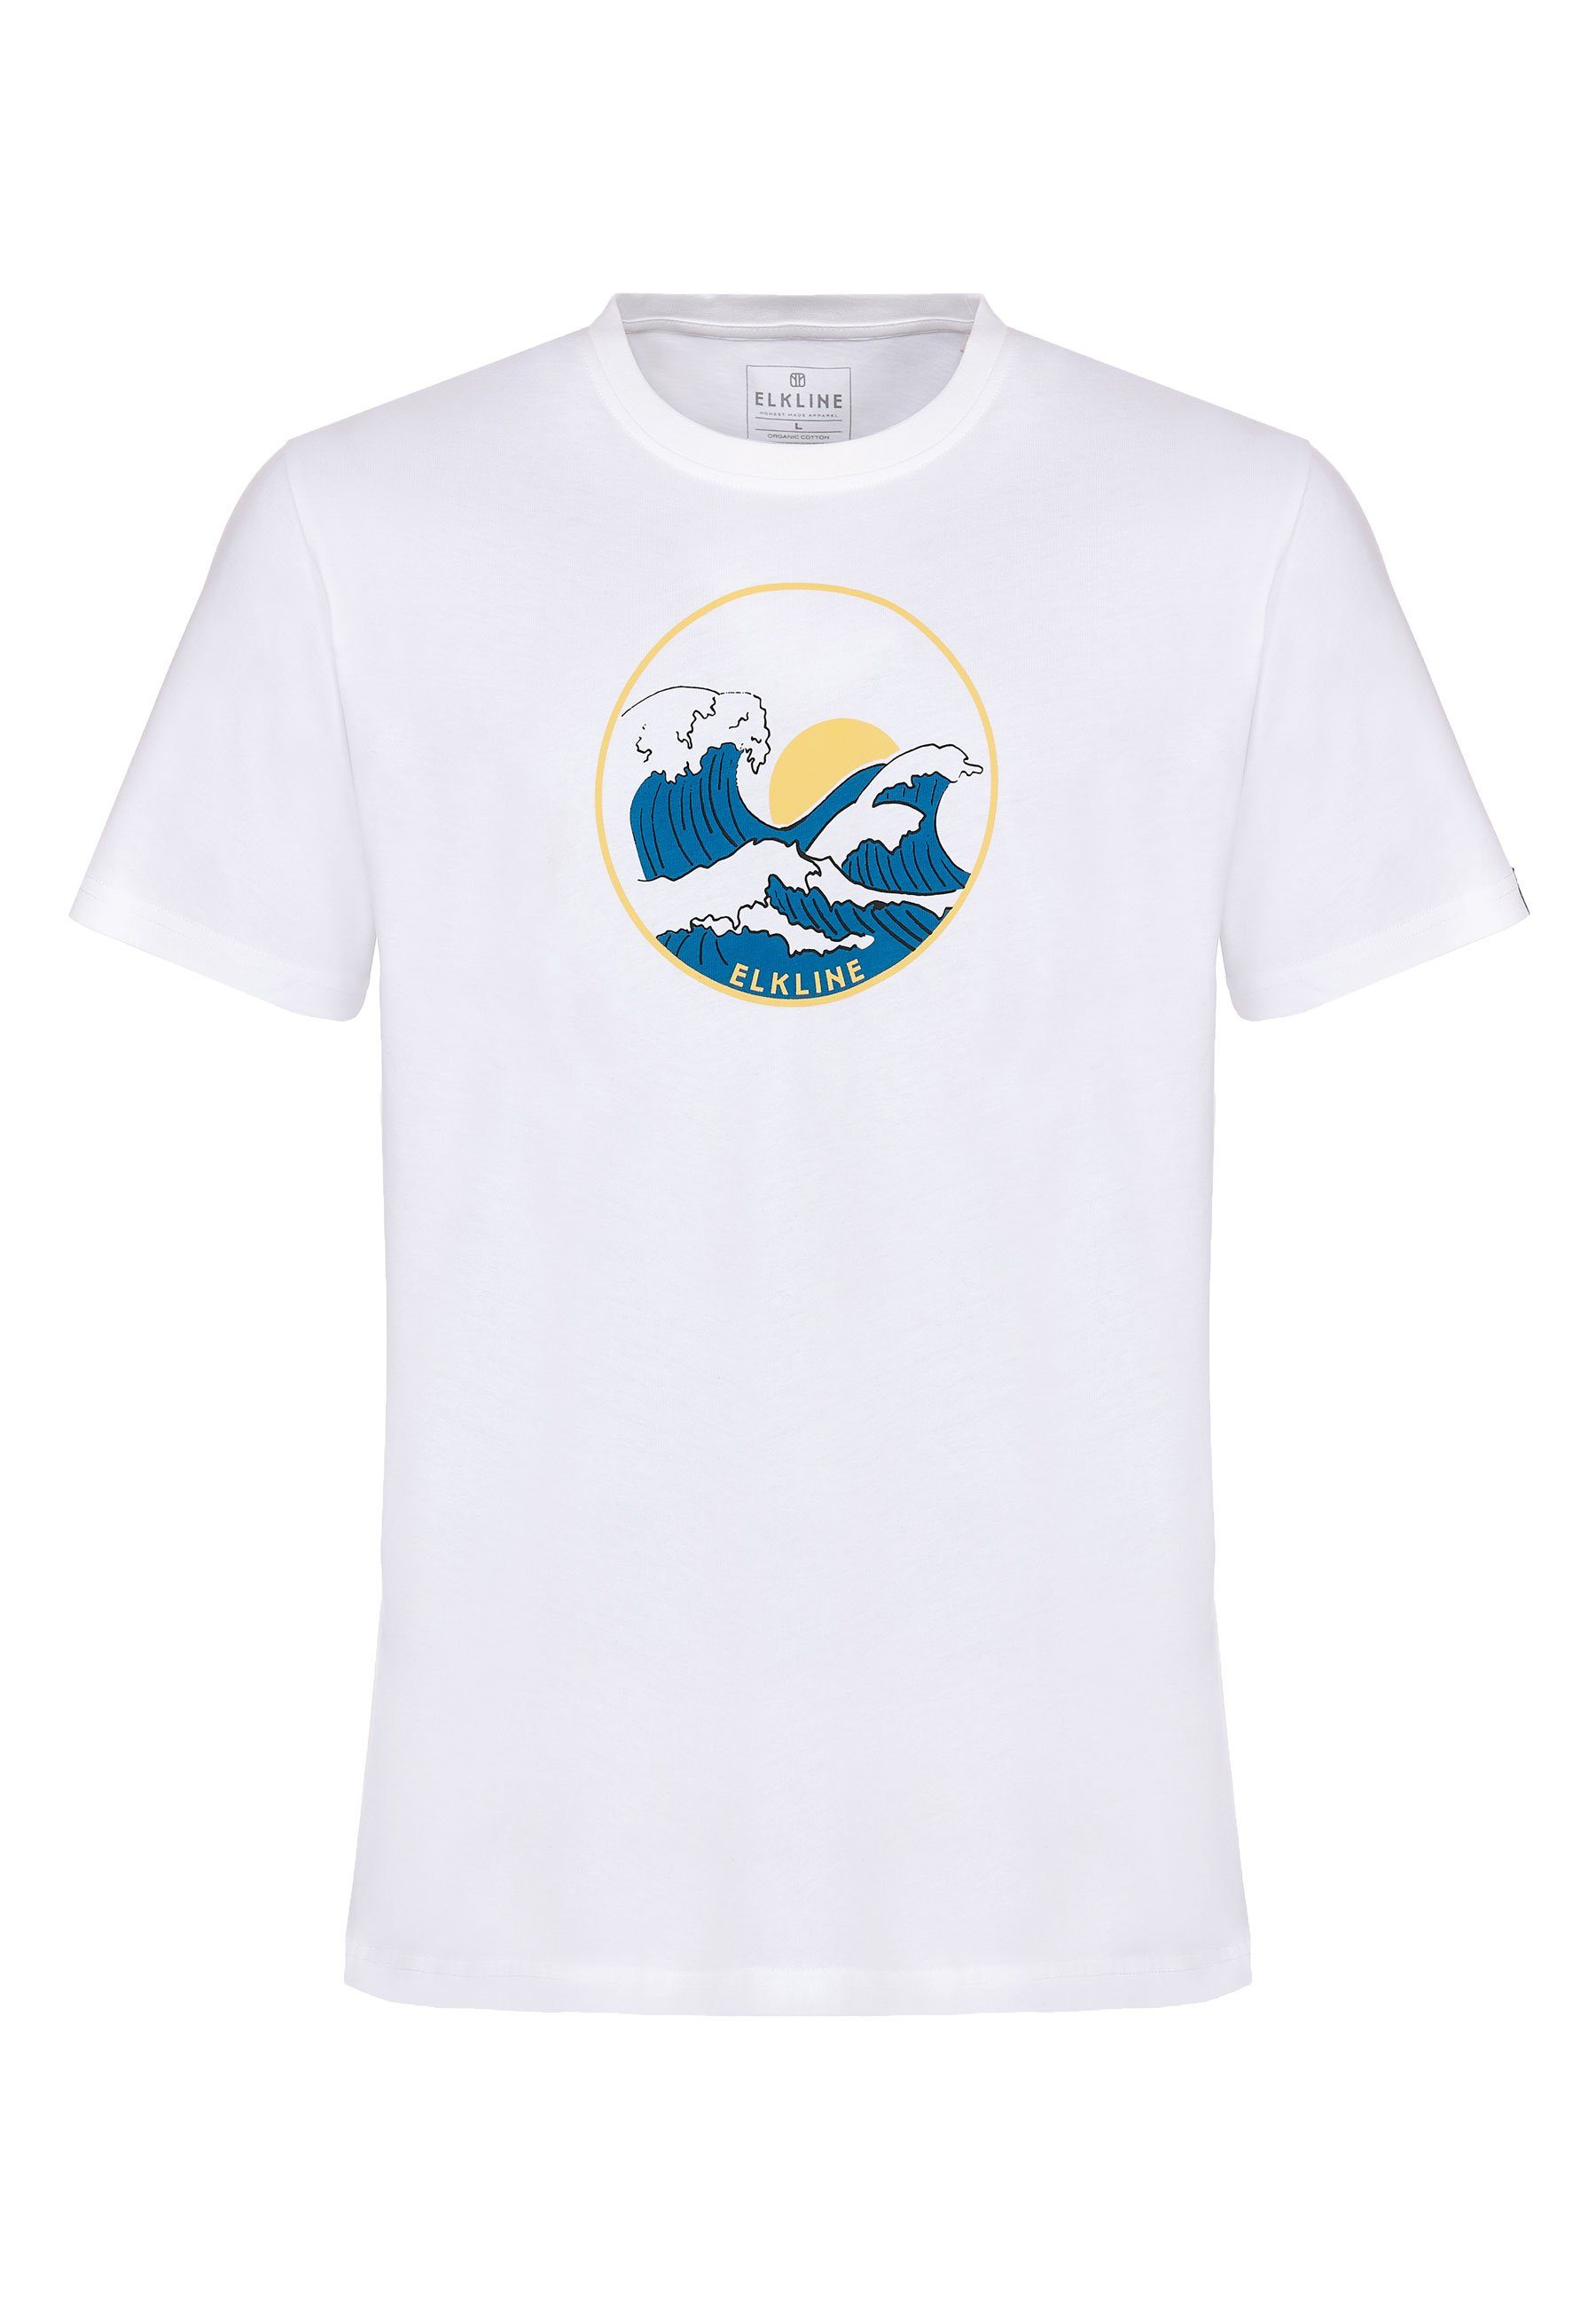 Elkline T-Shirt Wellenreiter Wellen Siebdruck Print